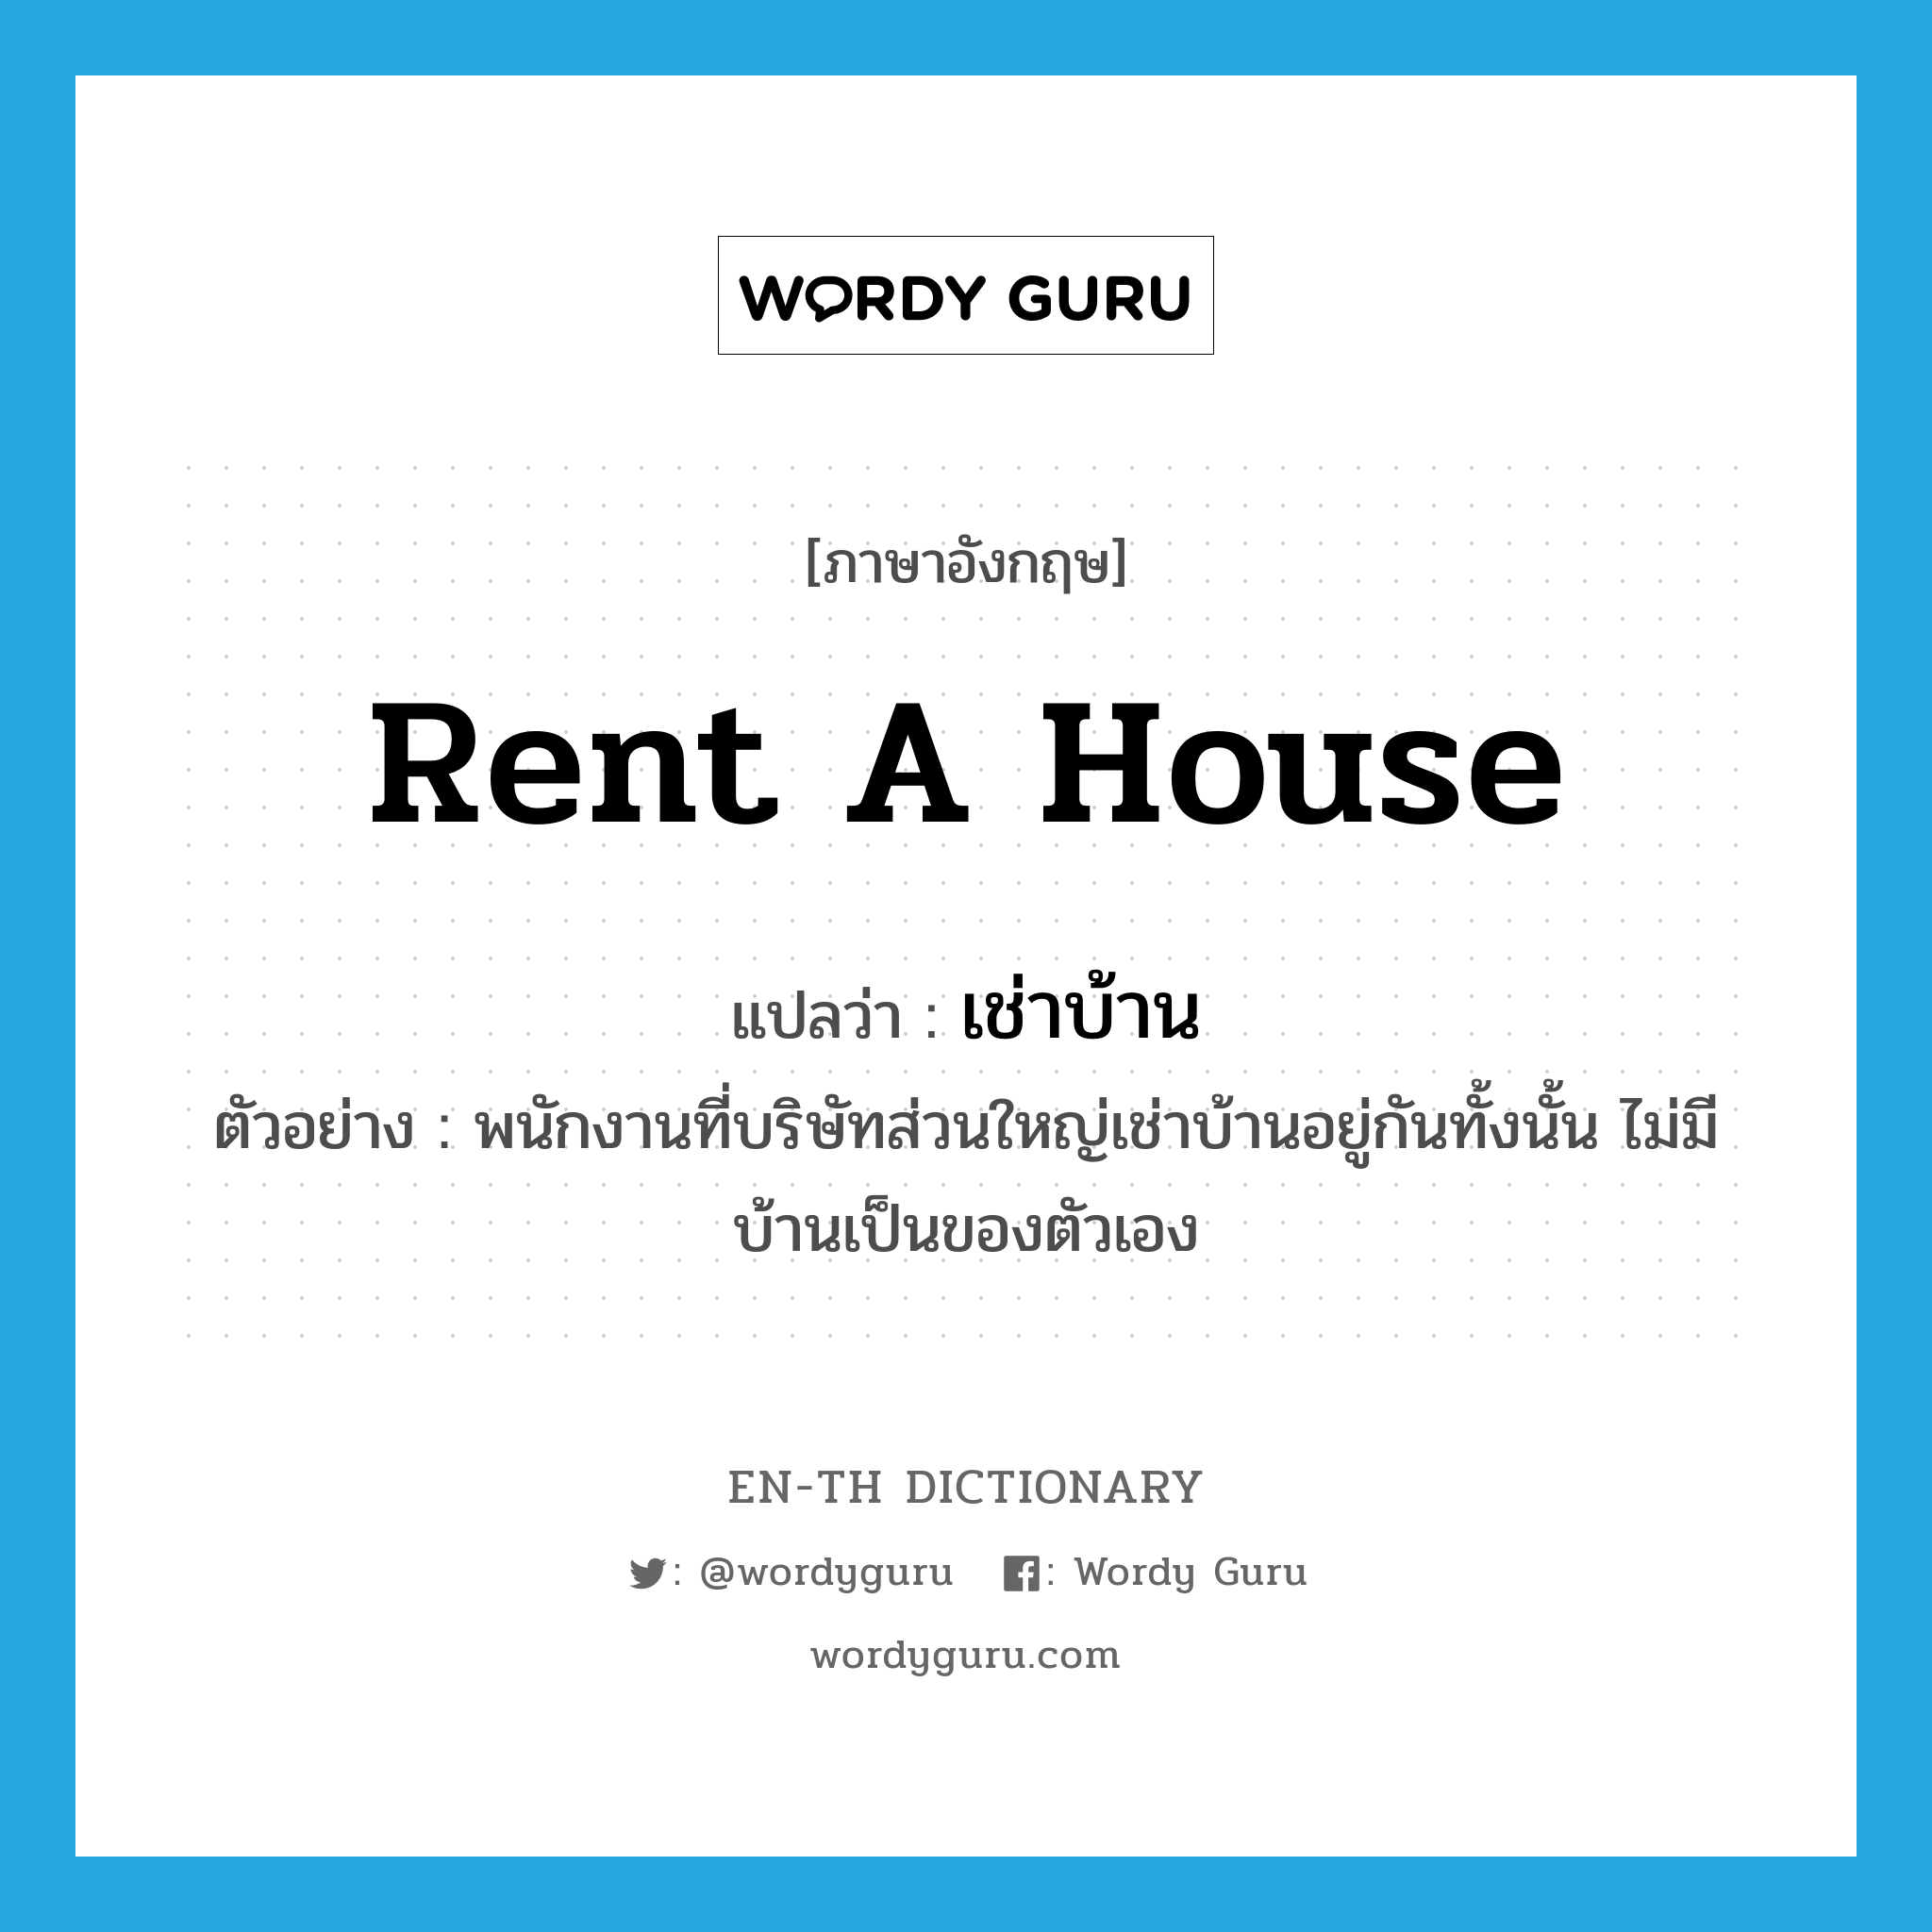 rent a house แปลว่า?, คำศัพท์ภาษาอังกฤษ rent a house แปลว่า เช่าบ้าน ประเภท V ตัวอย่าง พนักงานที่บริษัทส่วนใหญ่เช่าบ้านอยู่กันทั้งนั้น ไม่มีบ้านเป็นของตัวเอง หมวด V